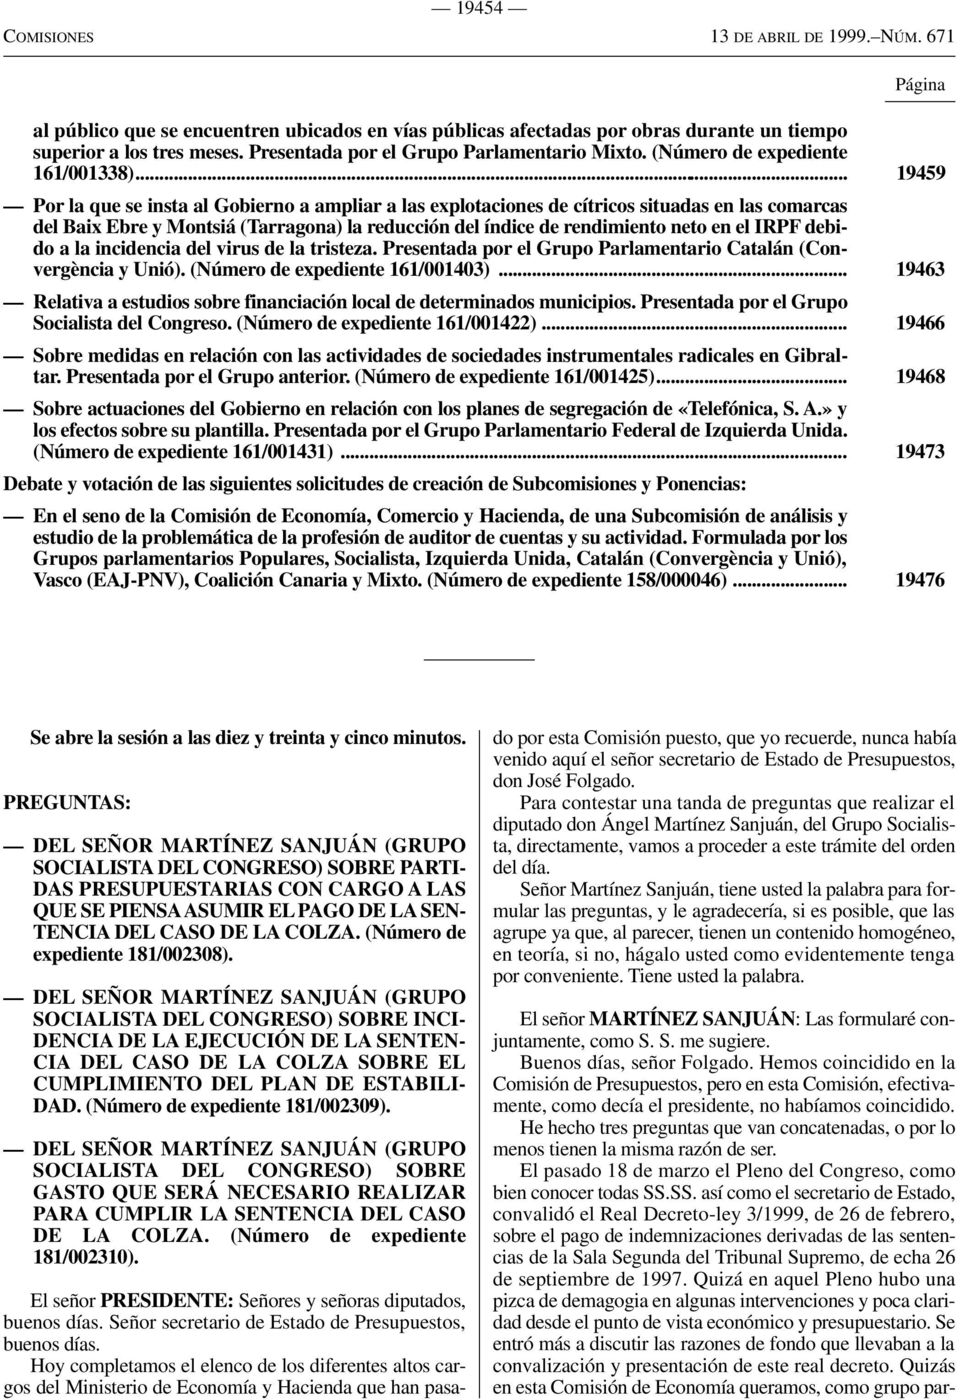 .. 19459 Por la que se insta al Gobierno a ampliar a las explotaciones de cítricos situadas en las comarcas del Baix Ebre y Montsiá (Tarragona) la reducción del índice de rendimiento neto en el IRPF